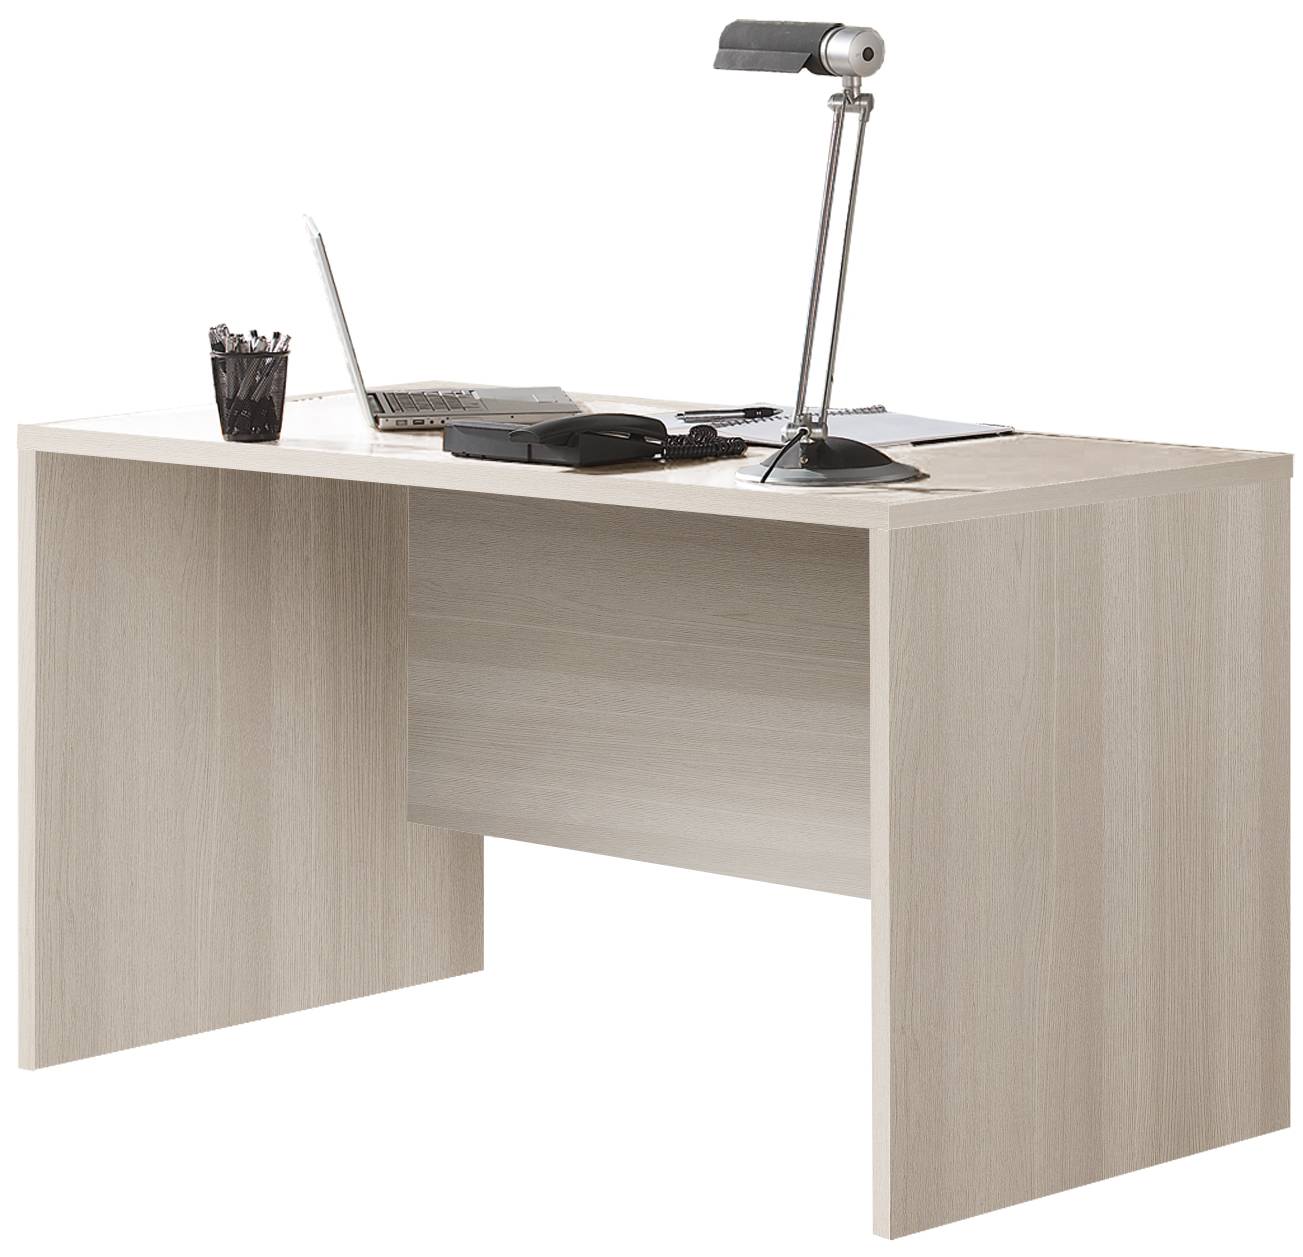 Mesa de escritorio de 150 cm. Acabada en color roble o nórdico